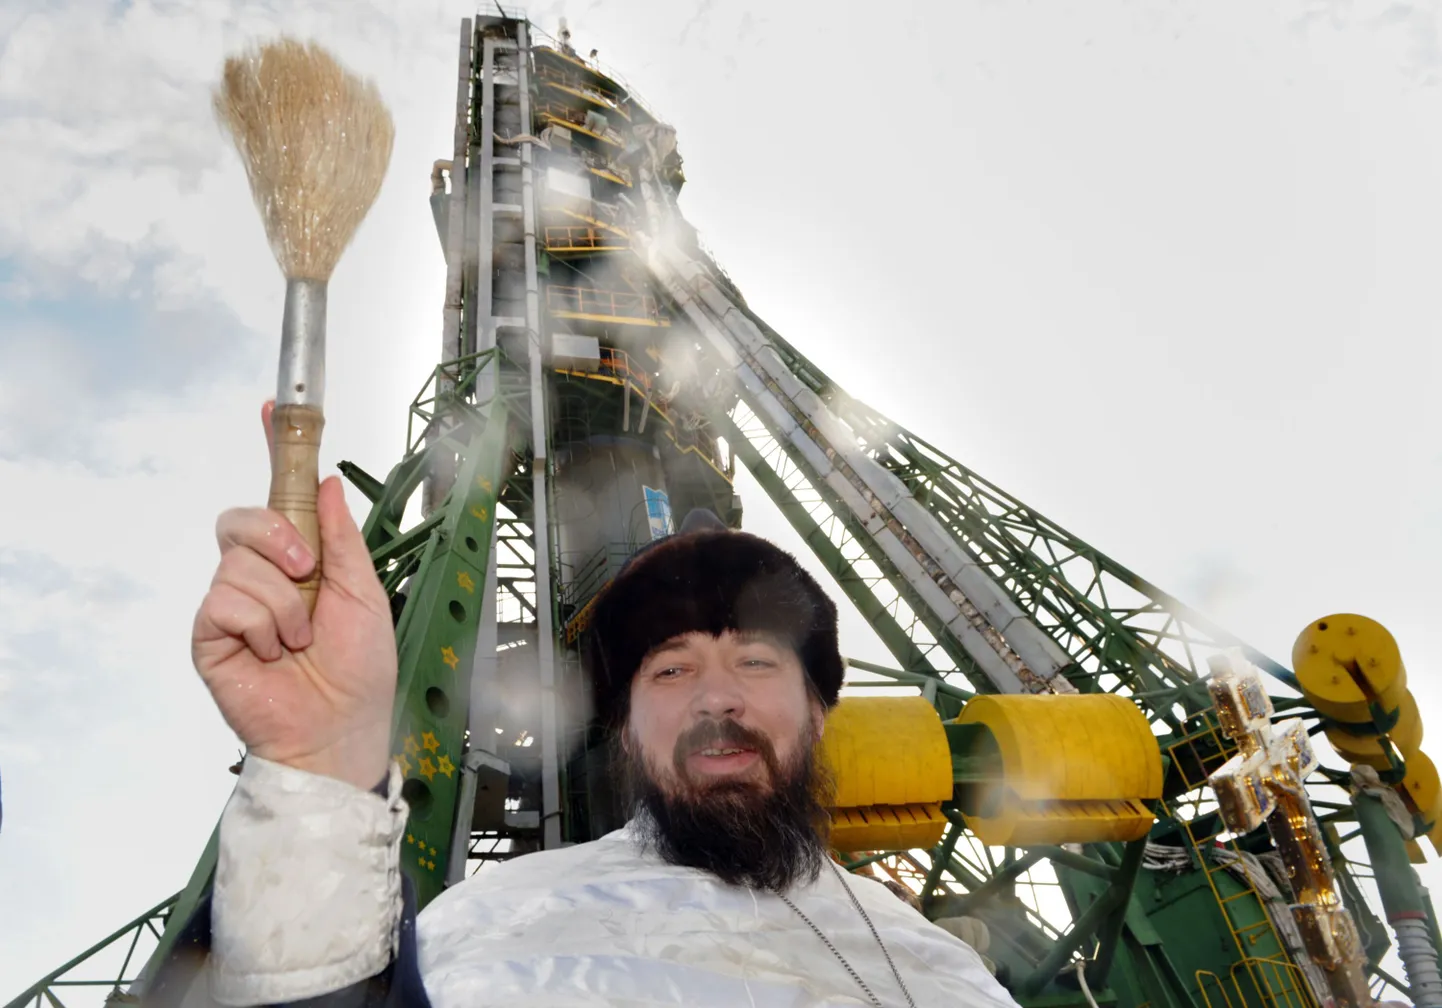 Православный священник благославляет космический корабль "Союз ТМА-17" перед запуском с космодрома Байконур.